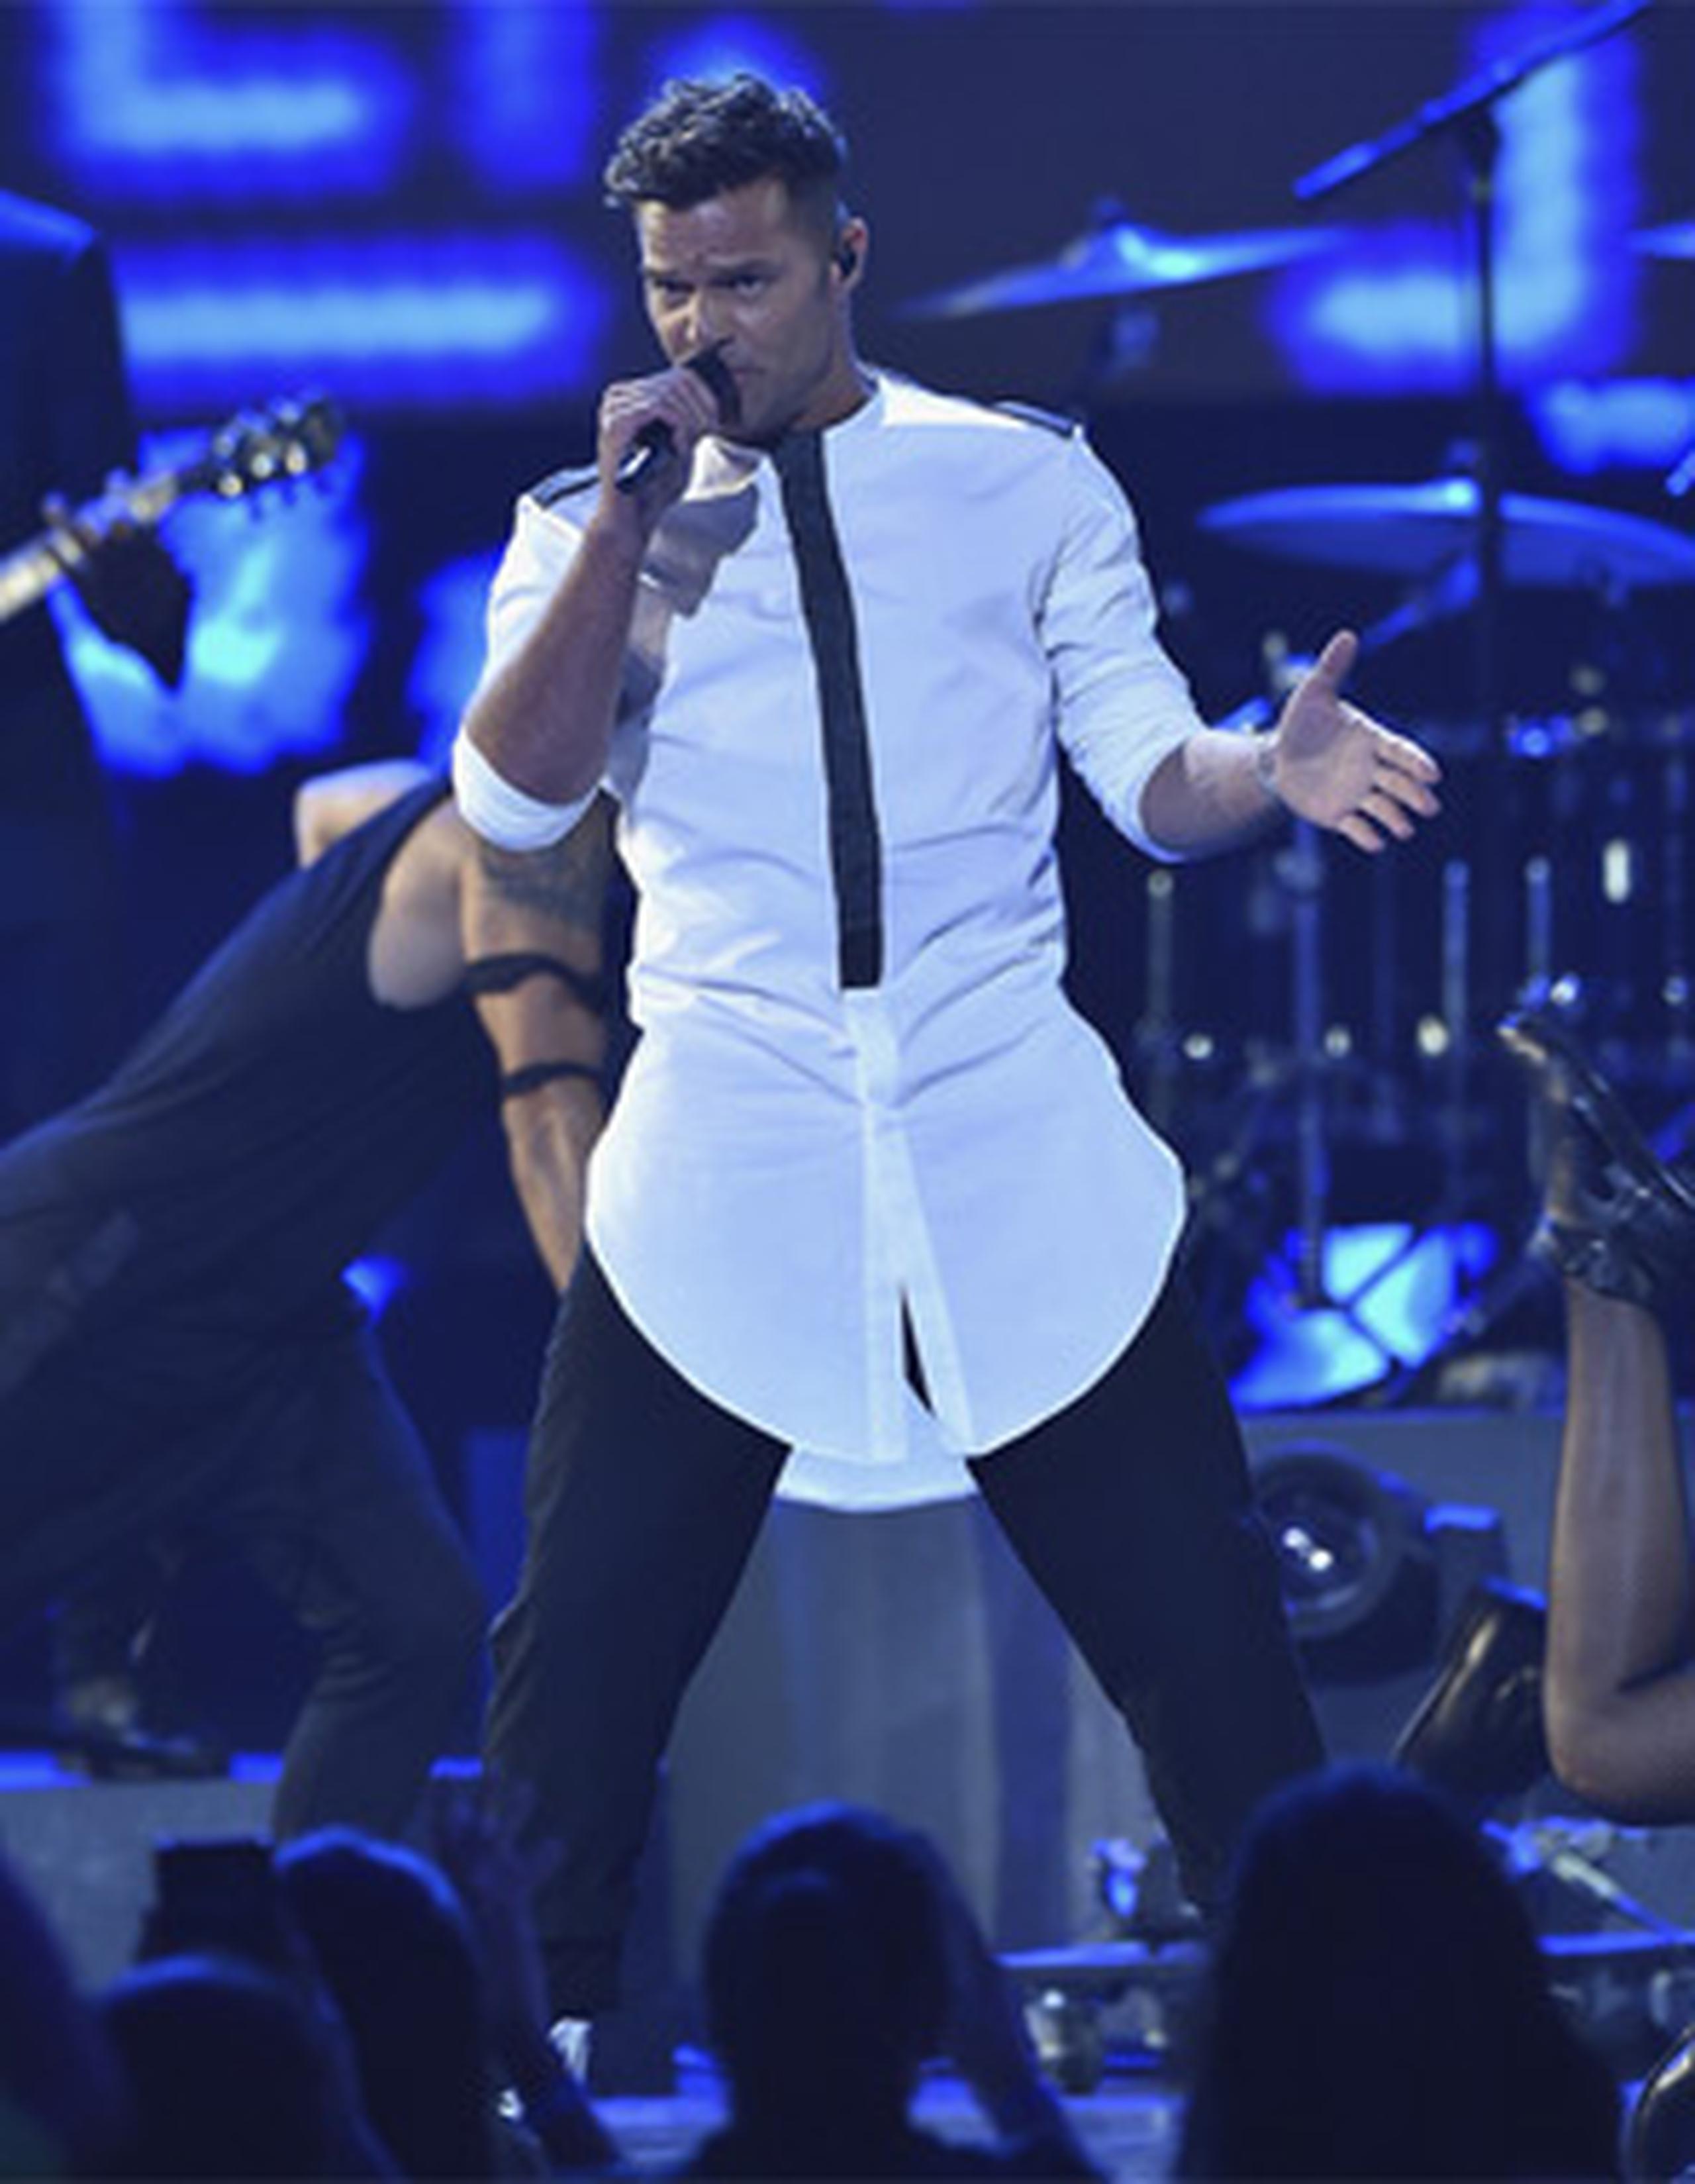 La fiesta musical latina comenzó con el tema La mordidita de Ricky Martin. (Univisión)